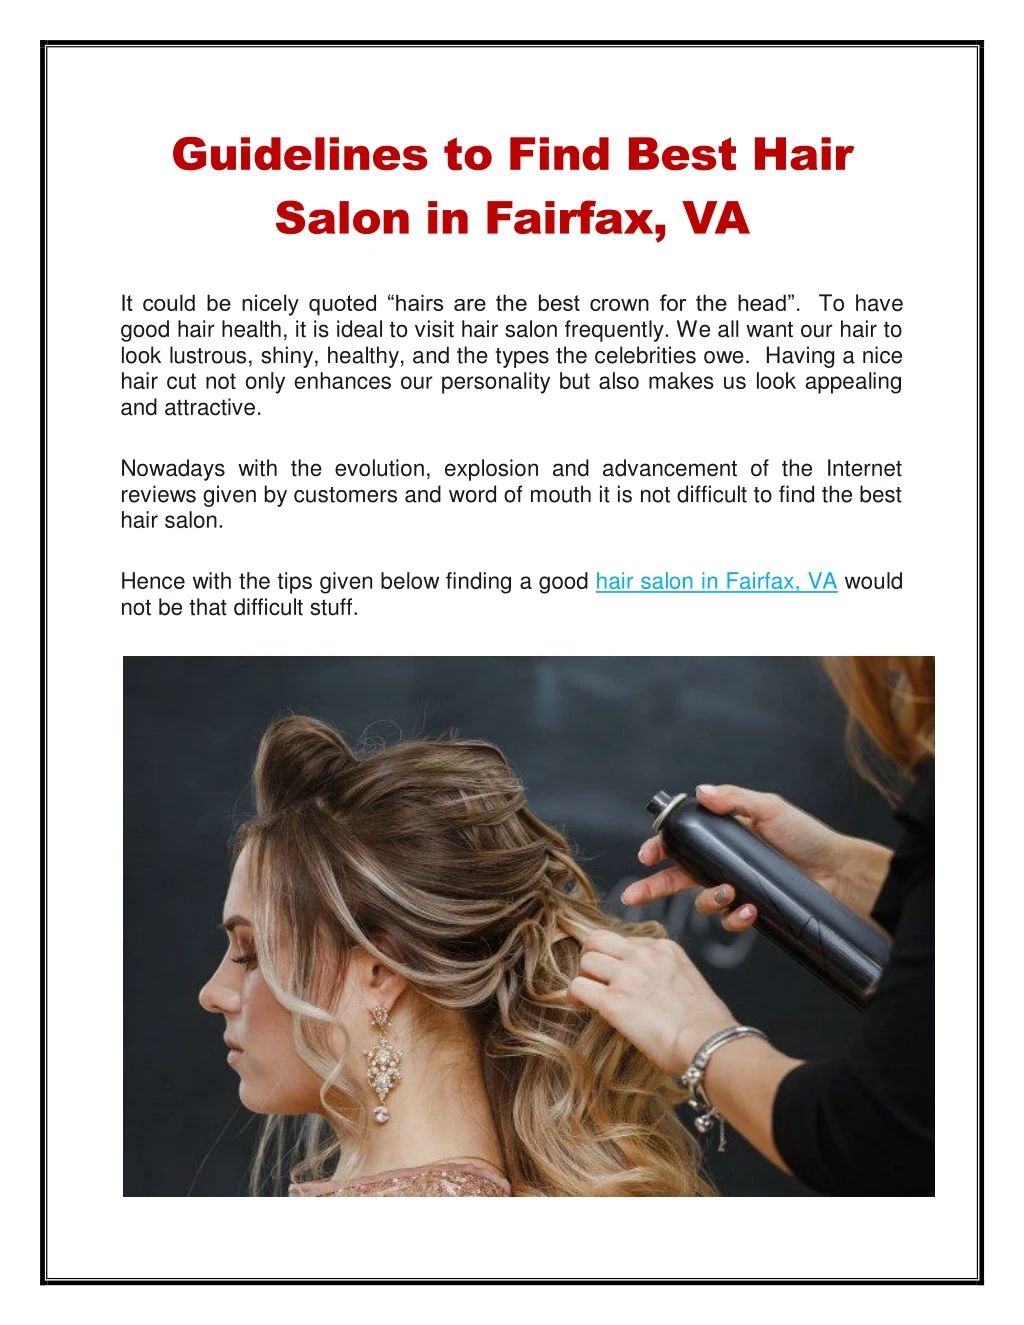 guidelines to find best hair salon in fairfax va